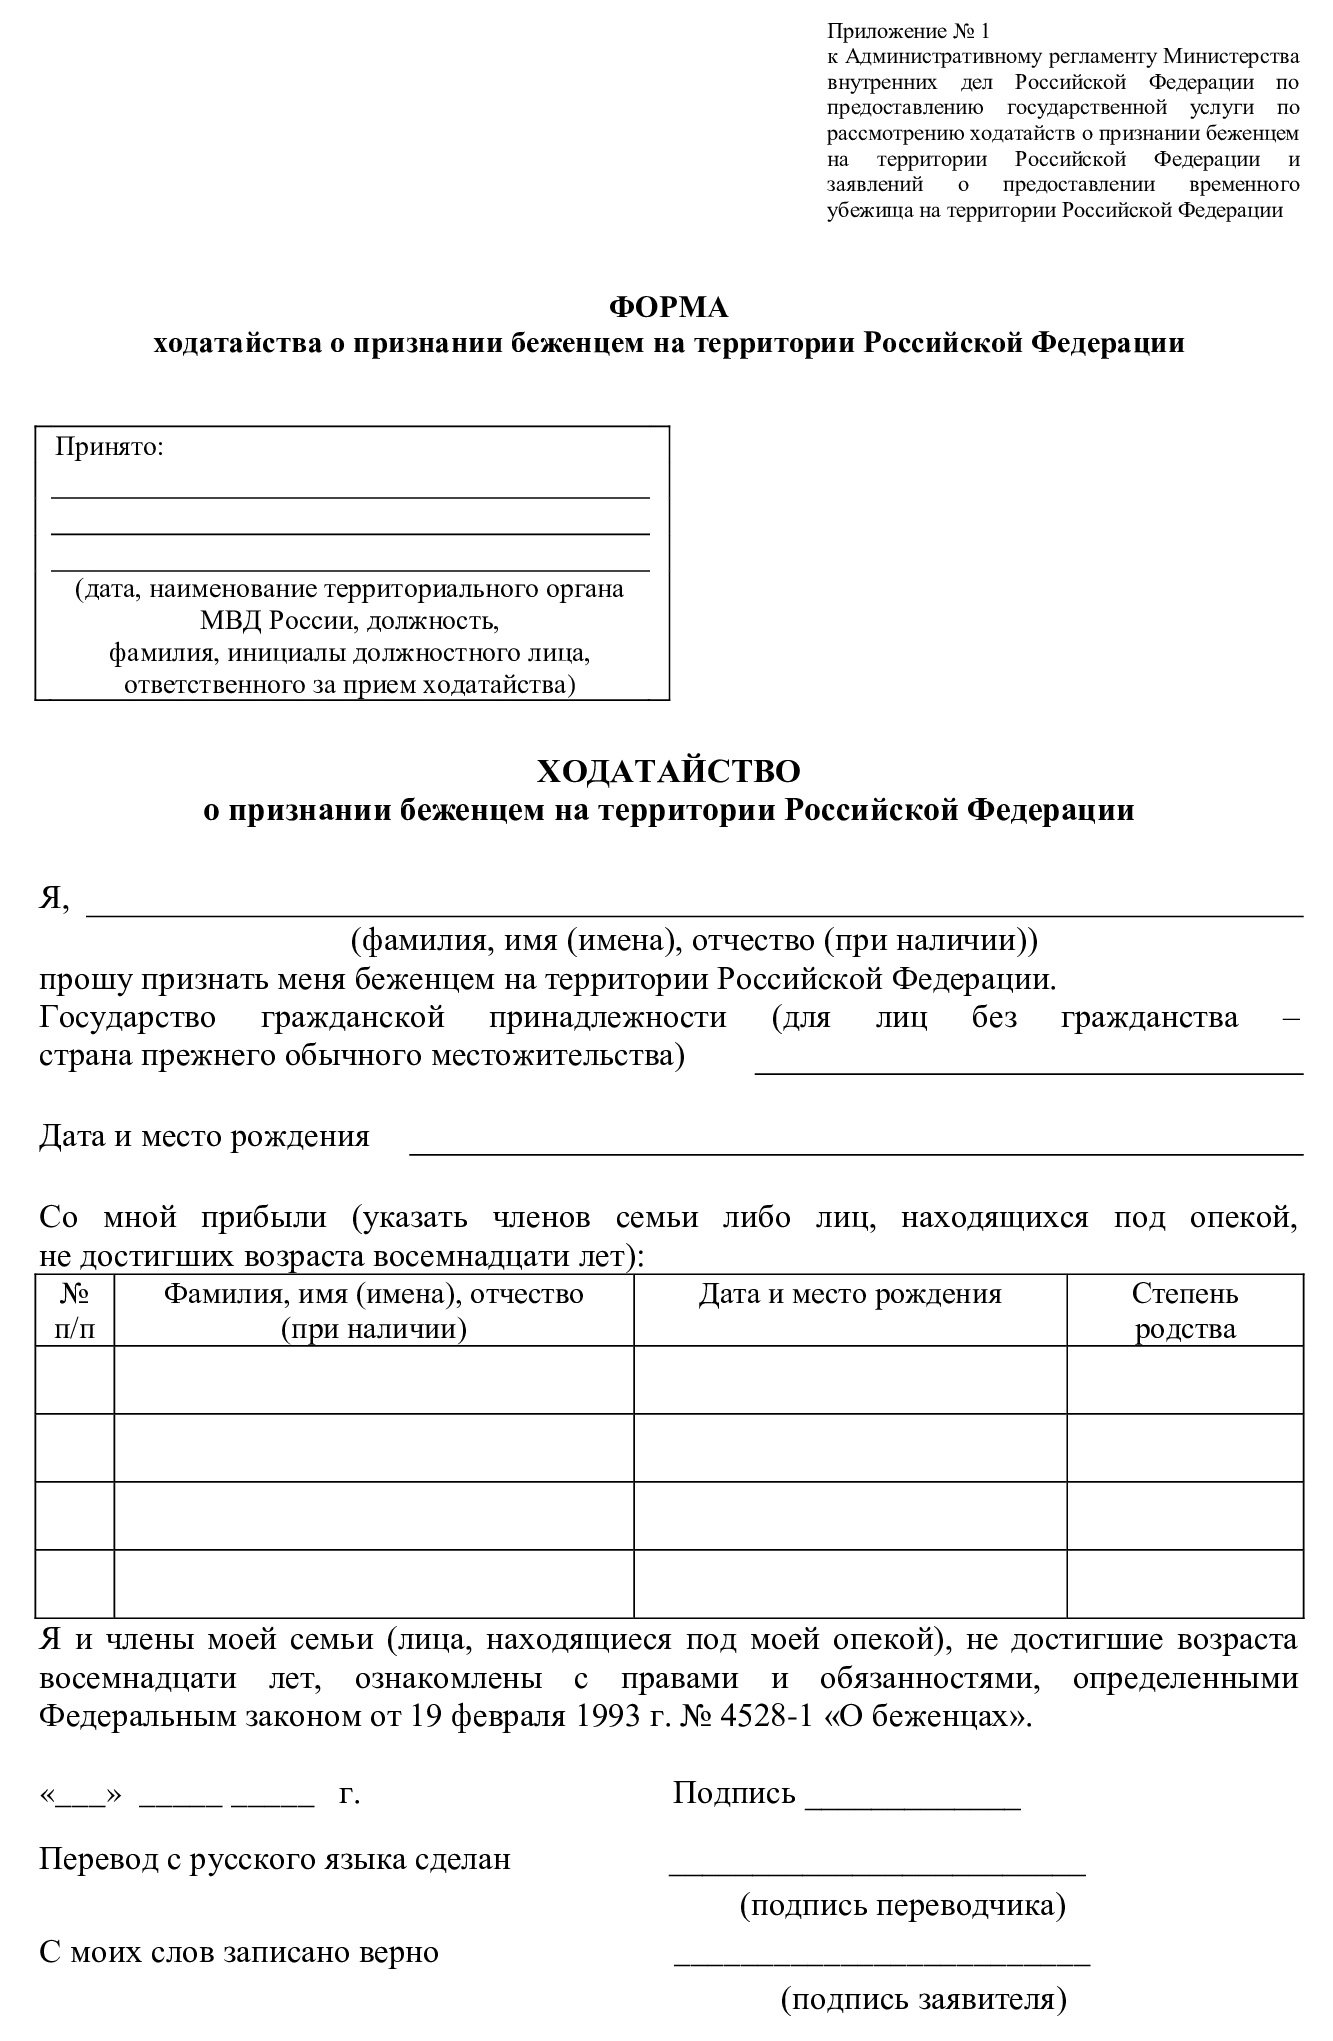 Форма ходатайства для оформления документов беженцам с Донбасса, ЛНР, Украины